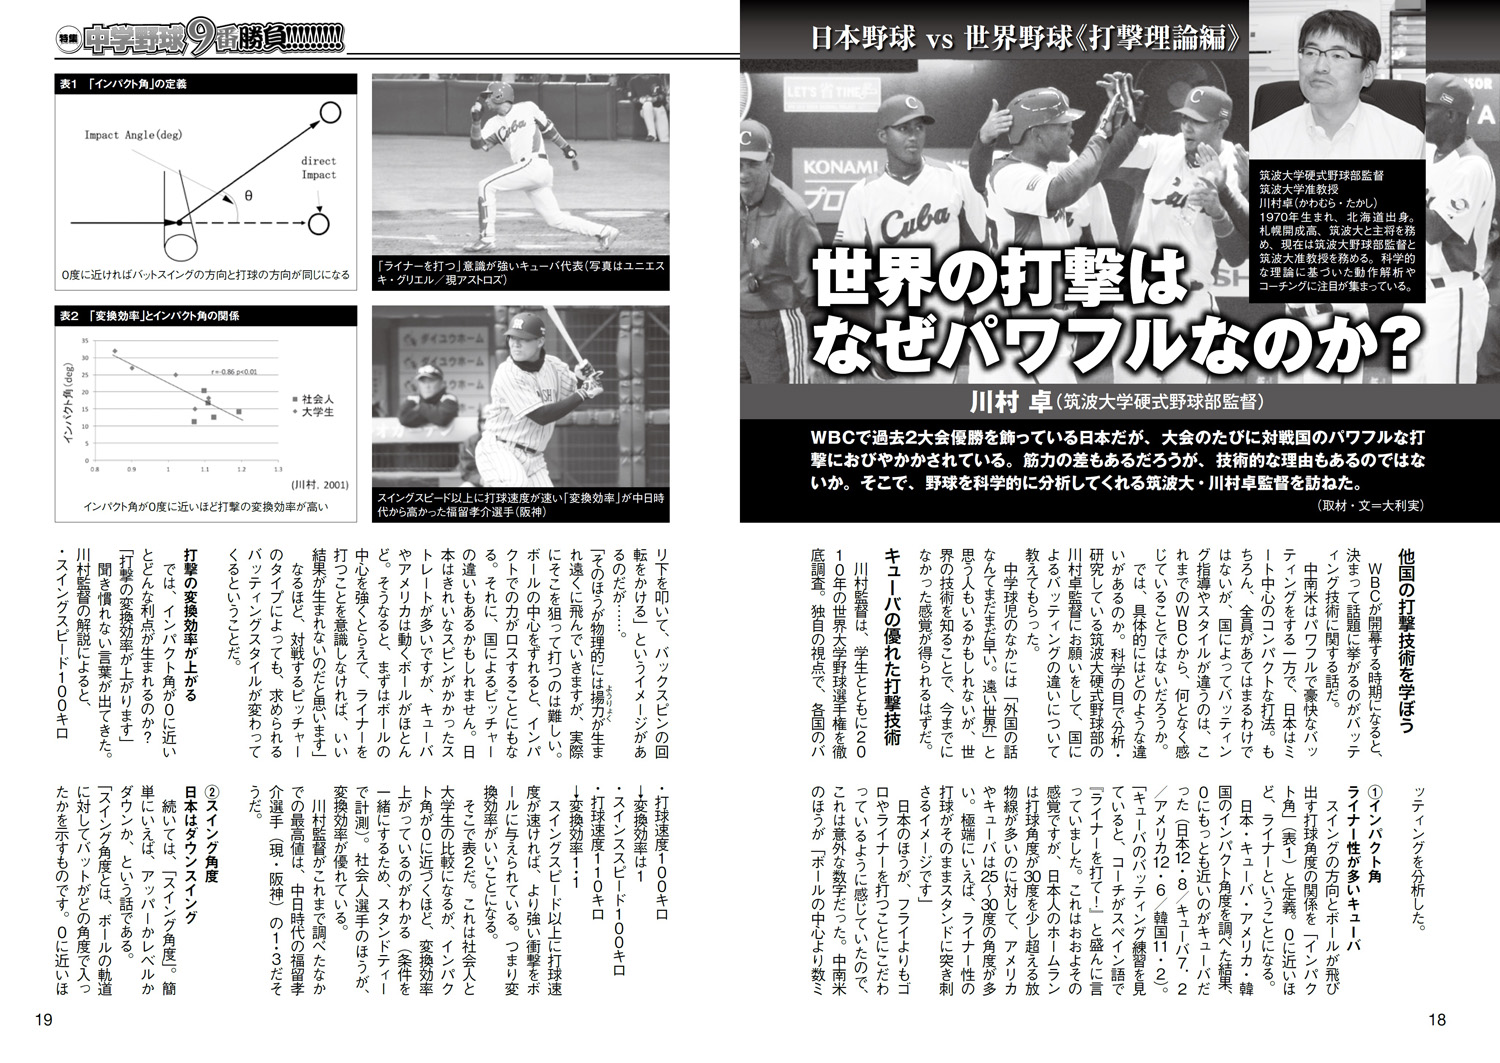 中学野球太郎vol 14 をチラチラっと試し読み 野球太郎web 高校野球からプロ野球ドラフト情報まで